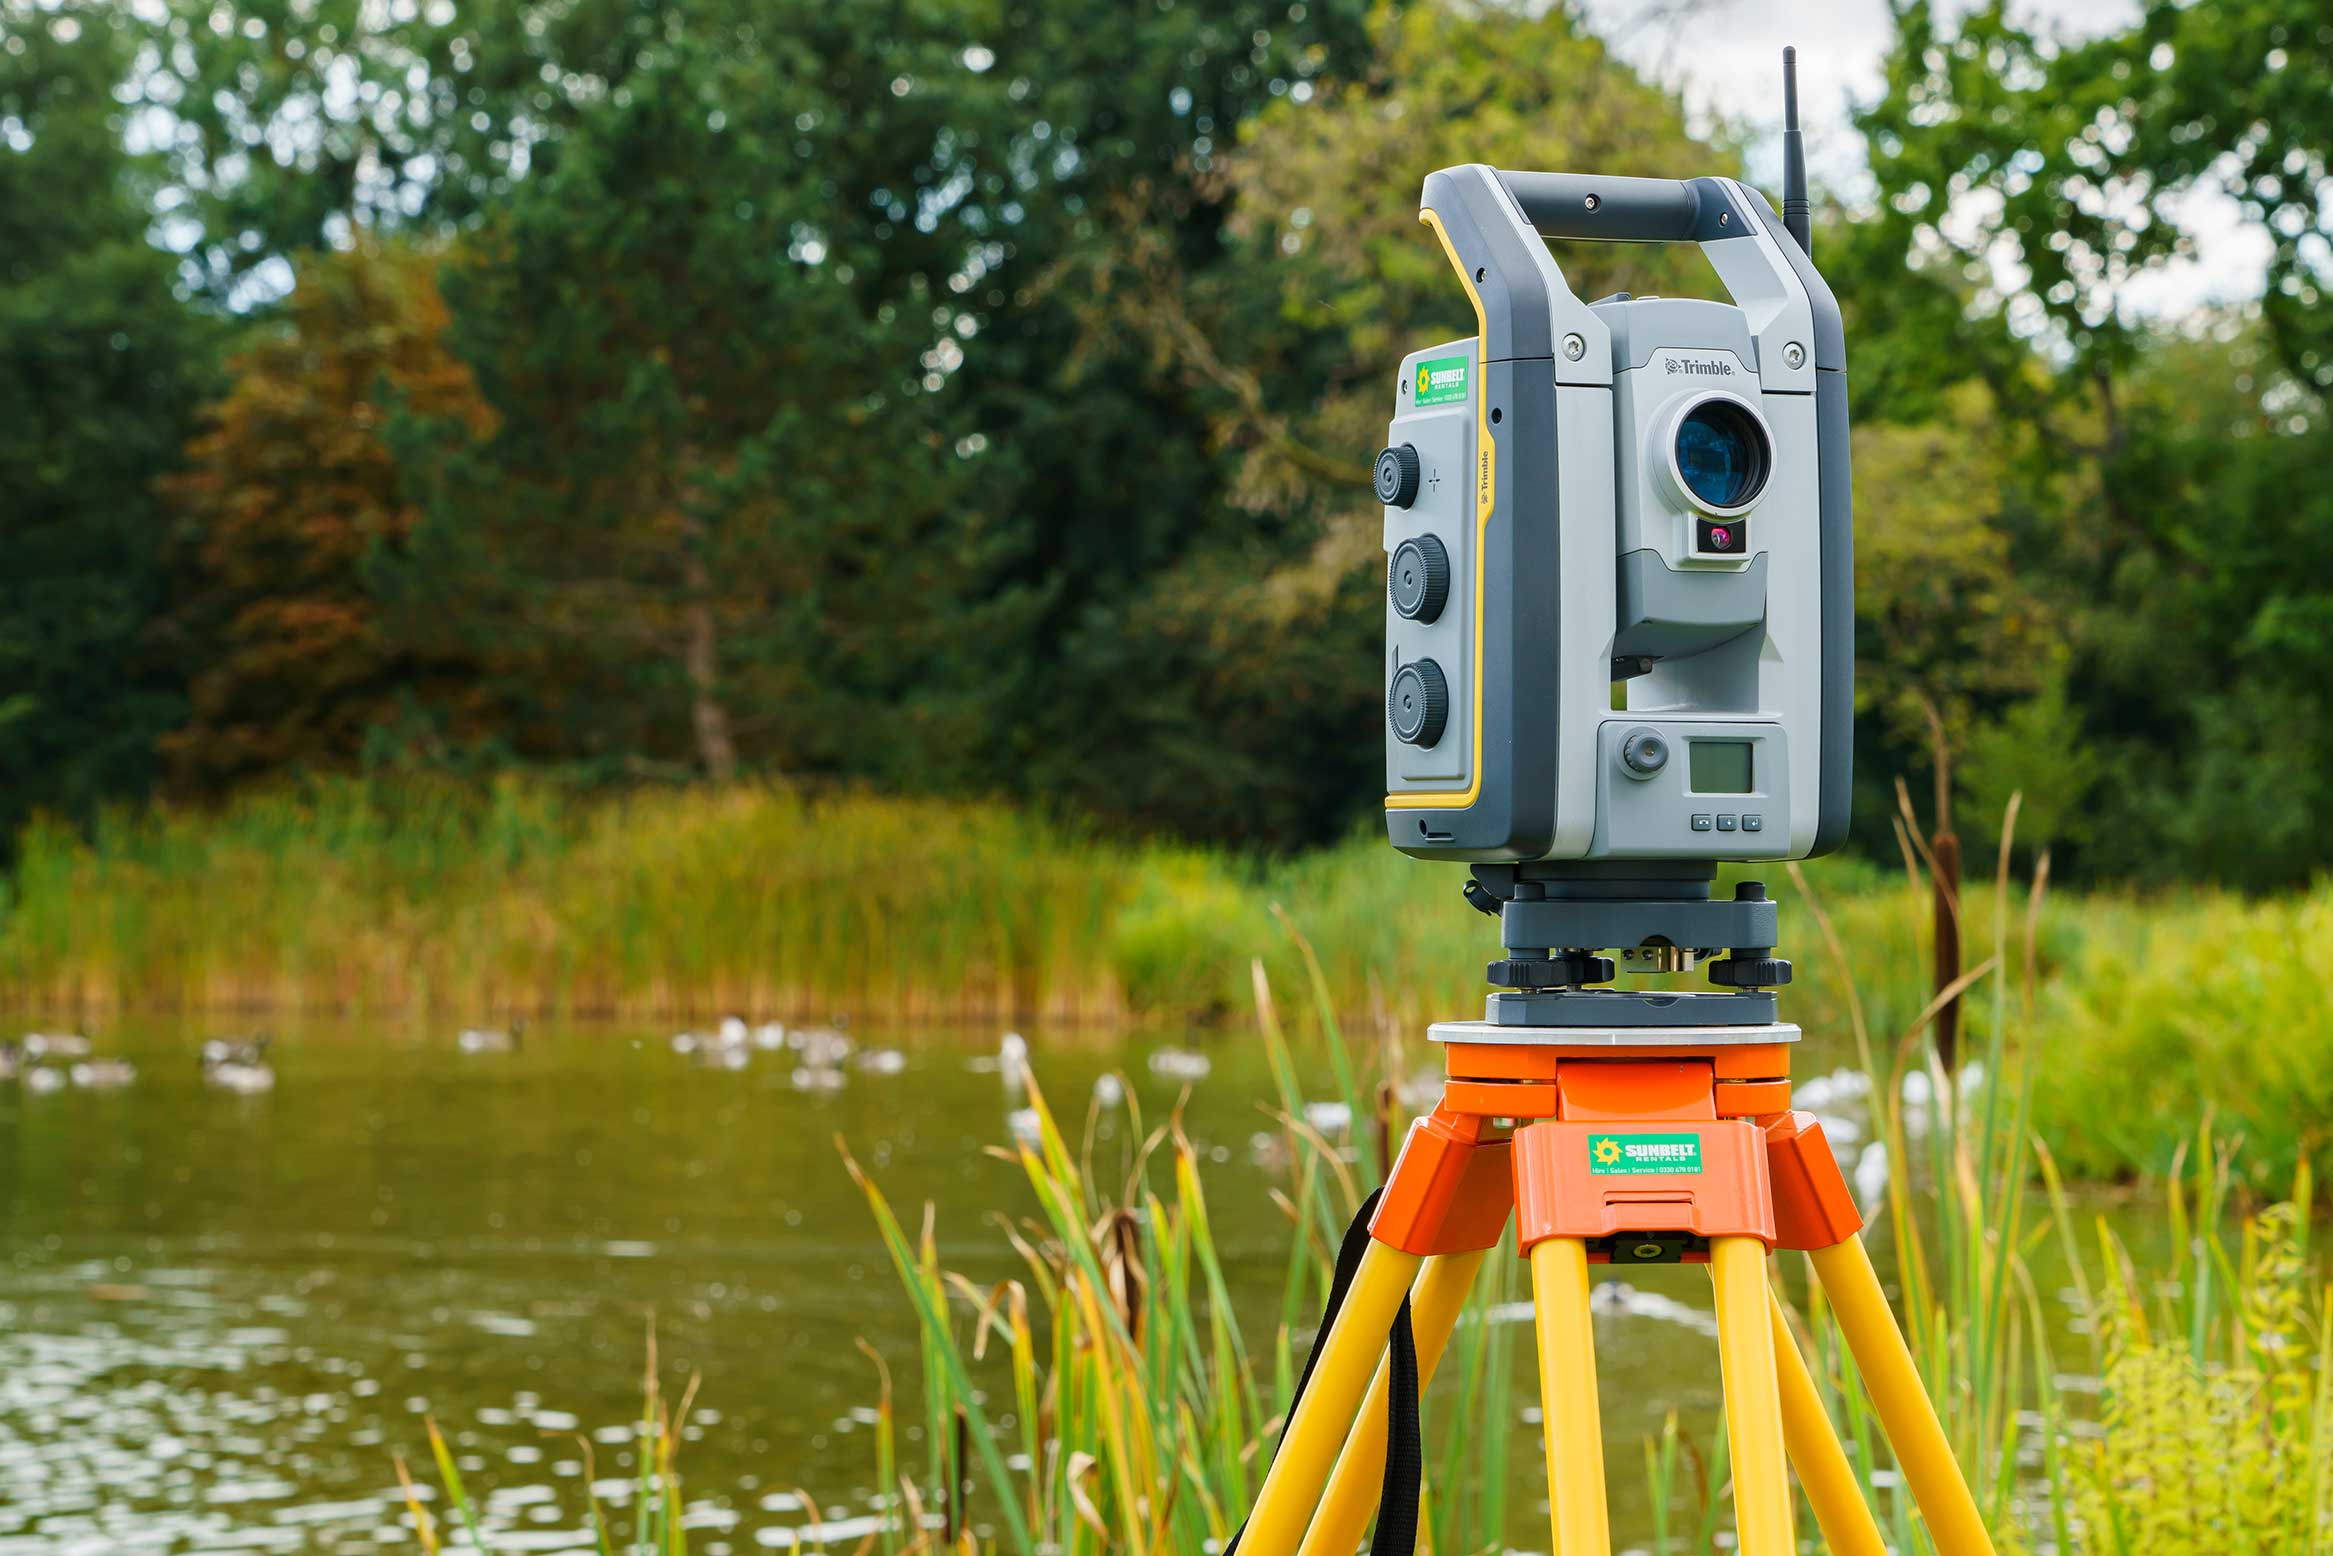 Sunbelt Branded 3D Trimble Laser Scanner In Situ At A Park Next To A Pond